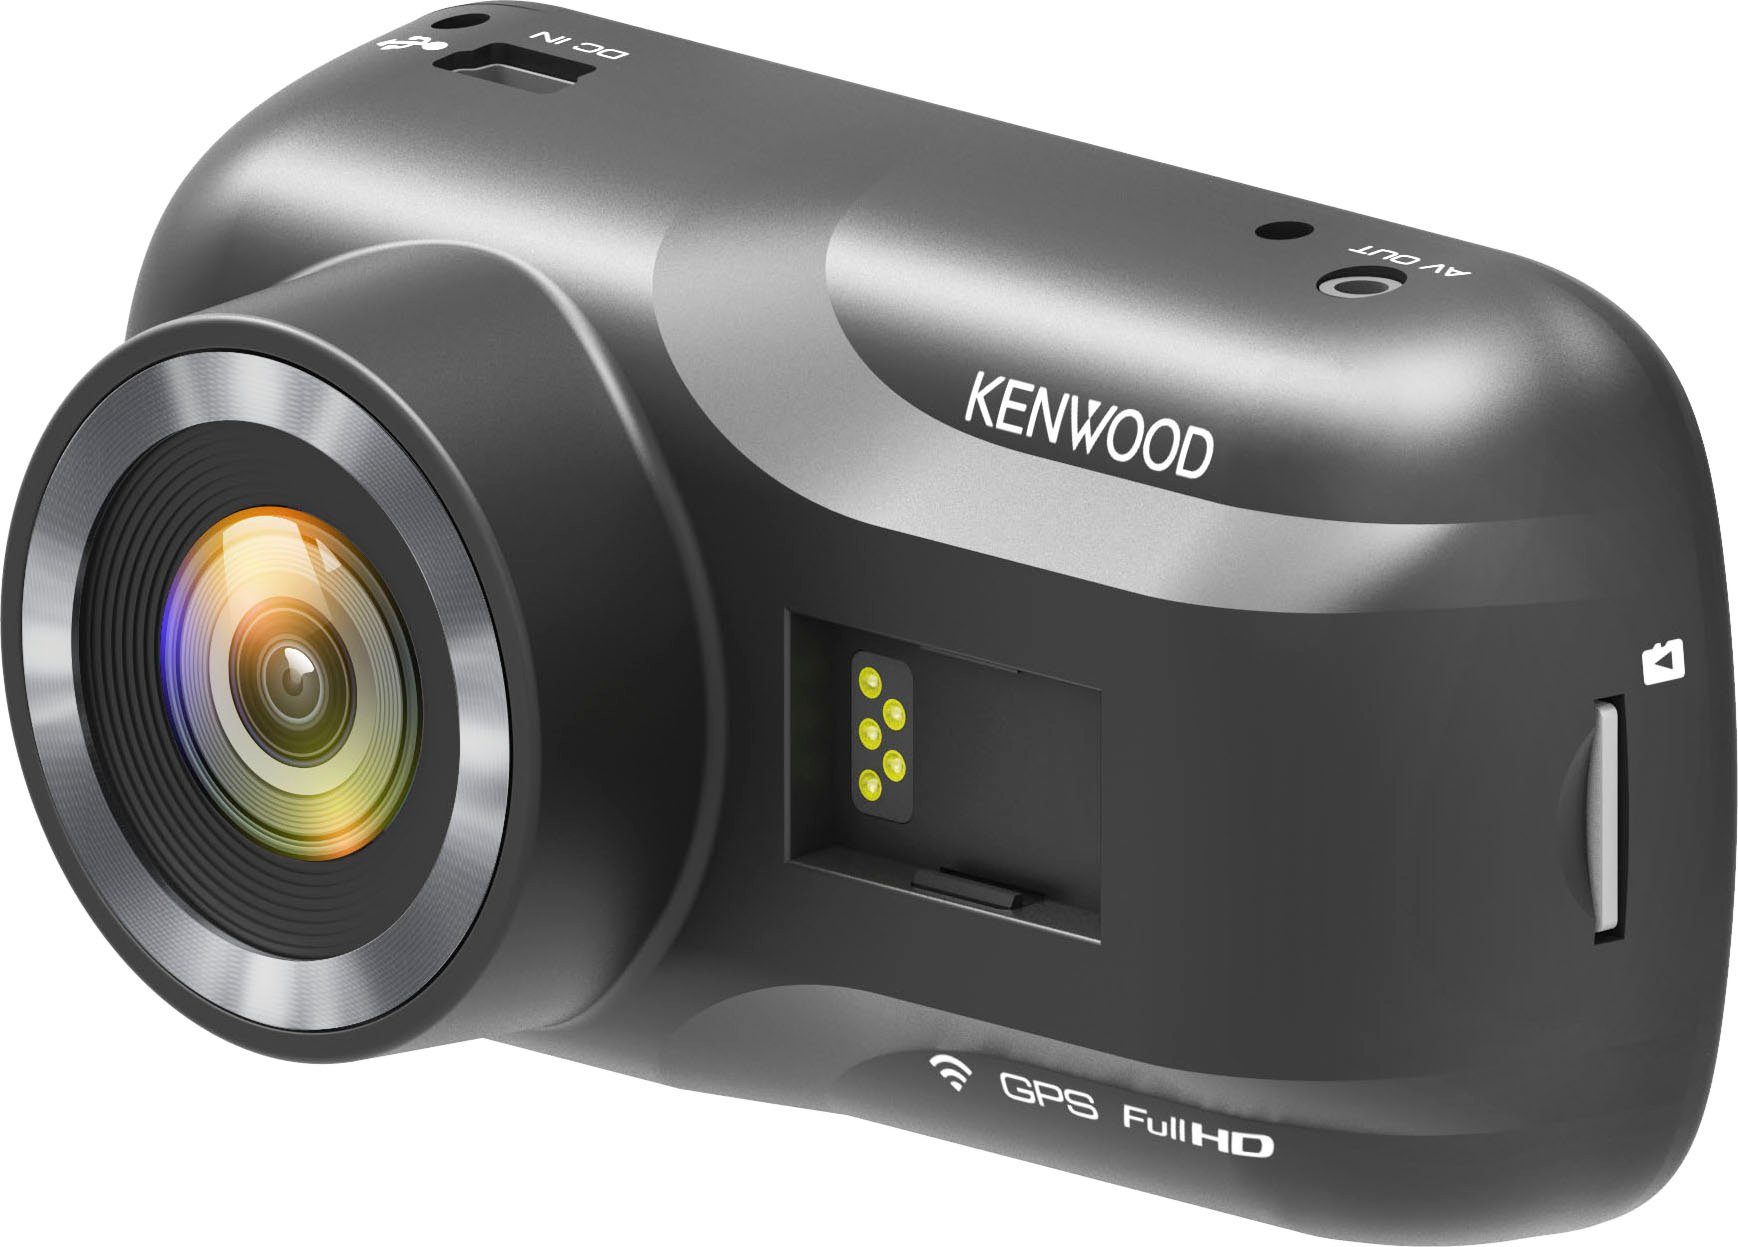 Kenwood DRV-A301W Dashcam (Full (Wi-Fi) HD, WLAN